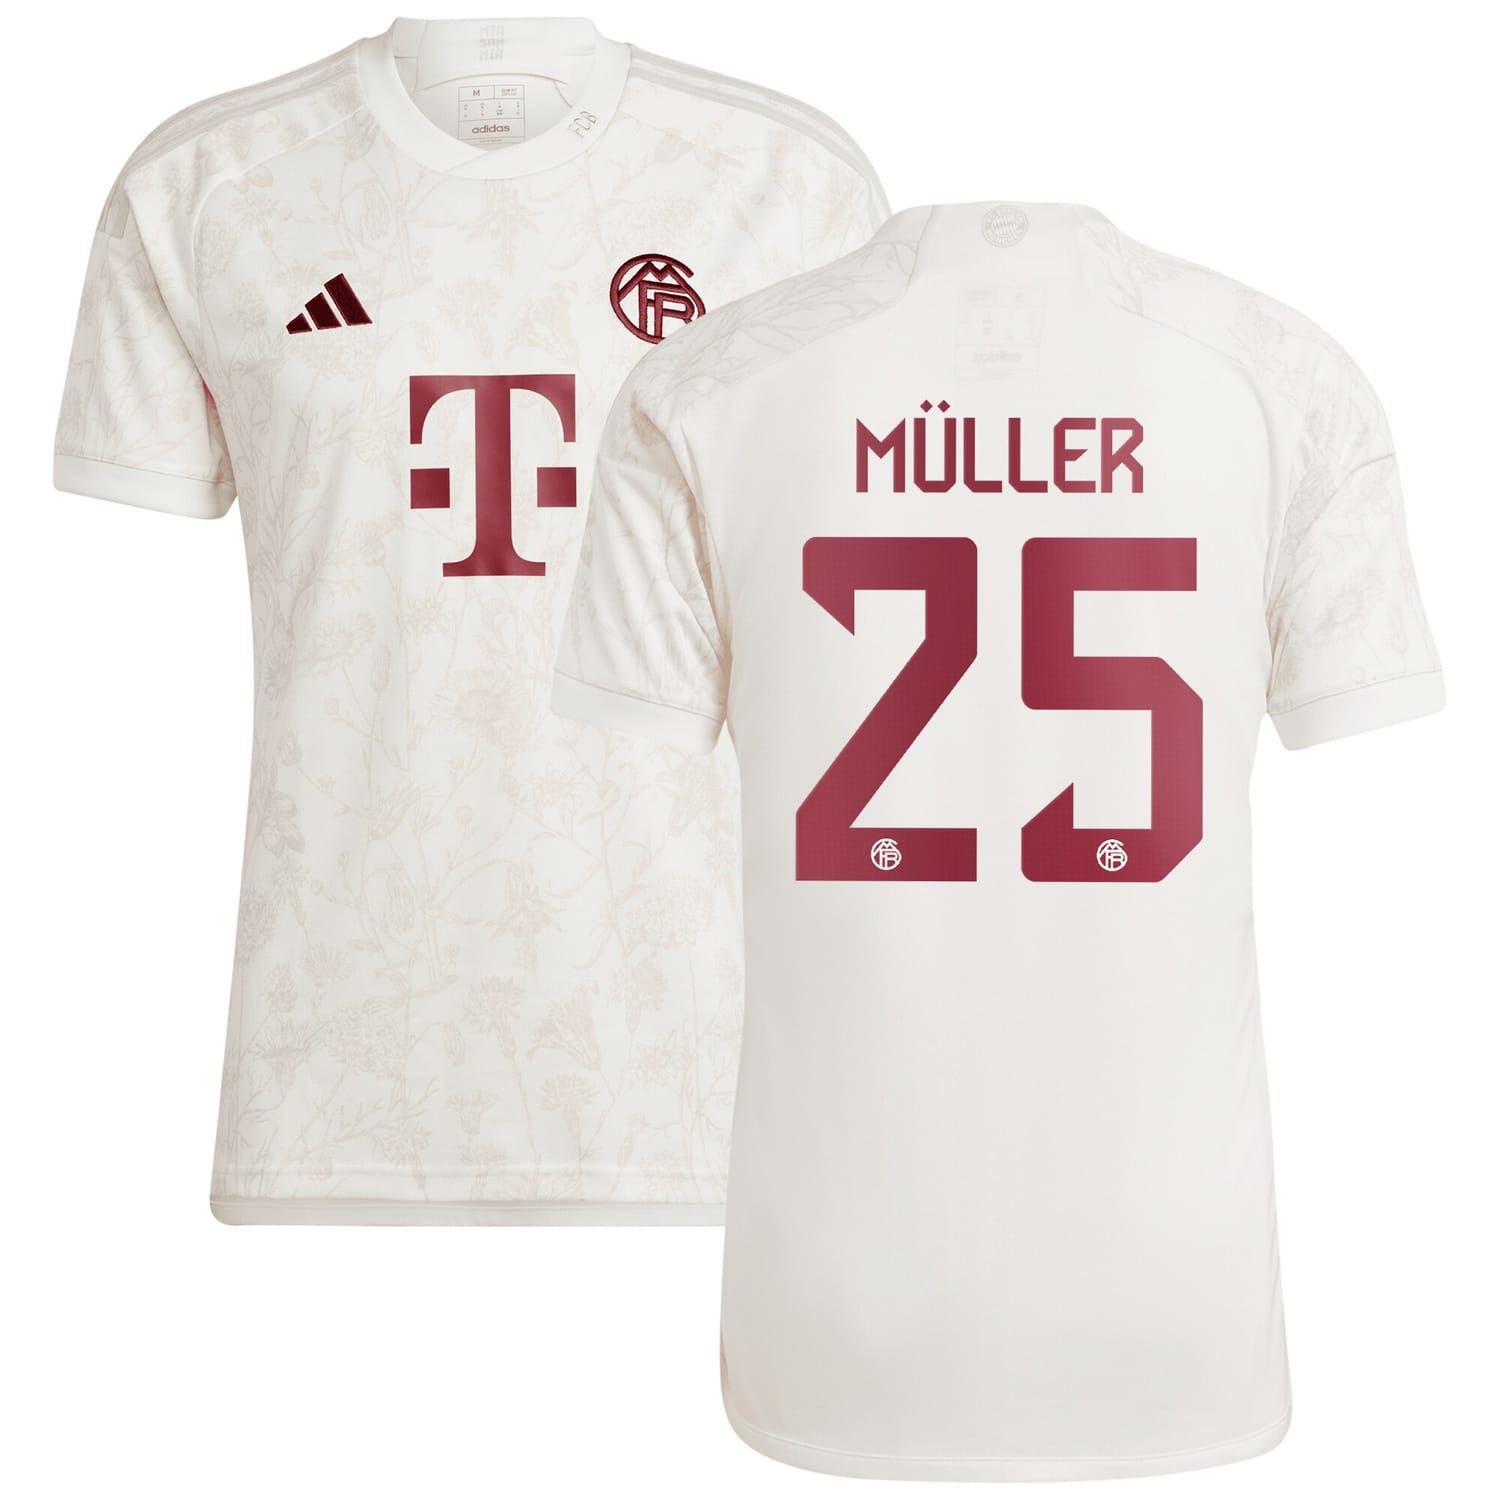 Bundesliga Bayern Munich Third Jersey Shirt White 2023-24 player Thomas Müller printing for Men